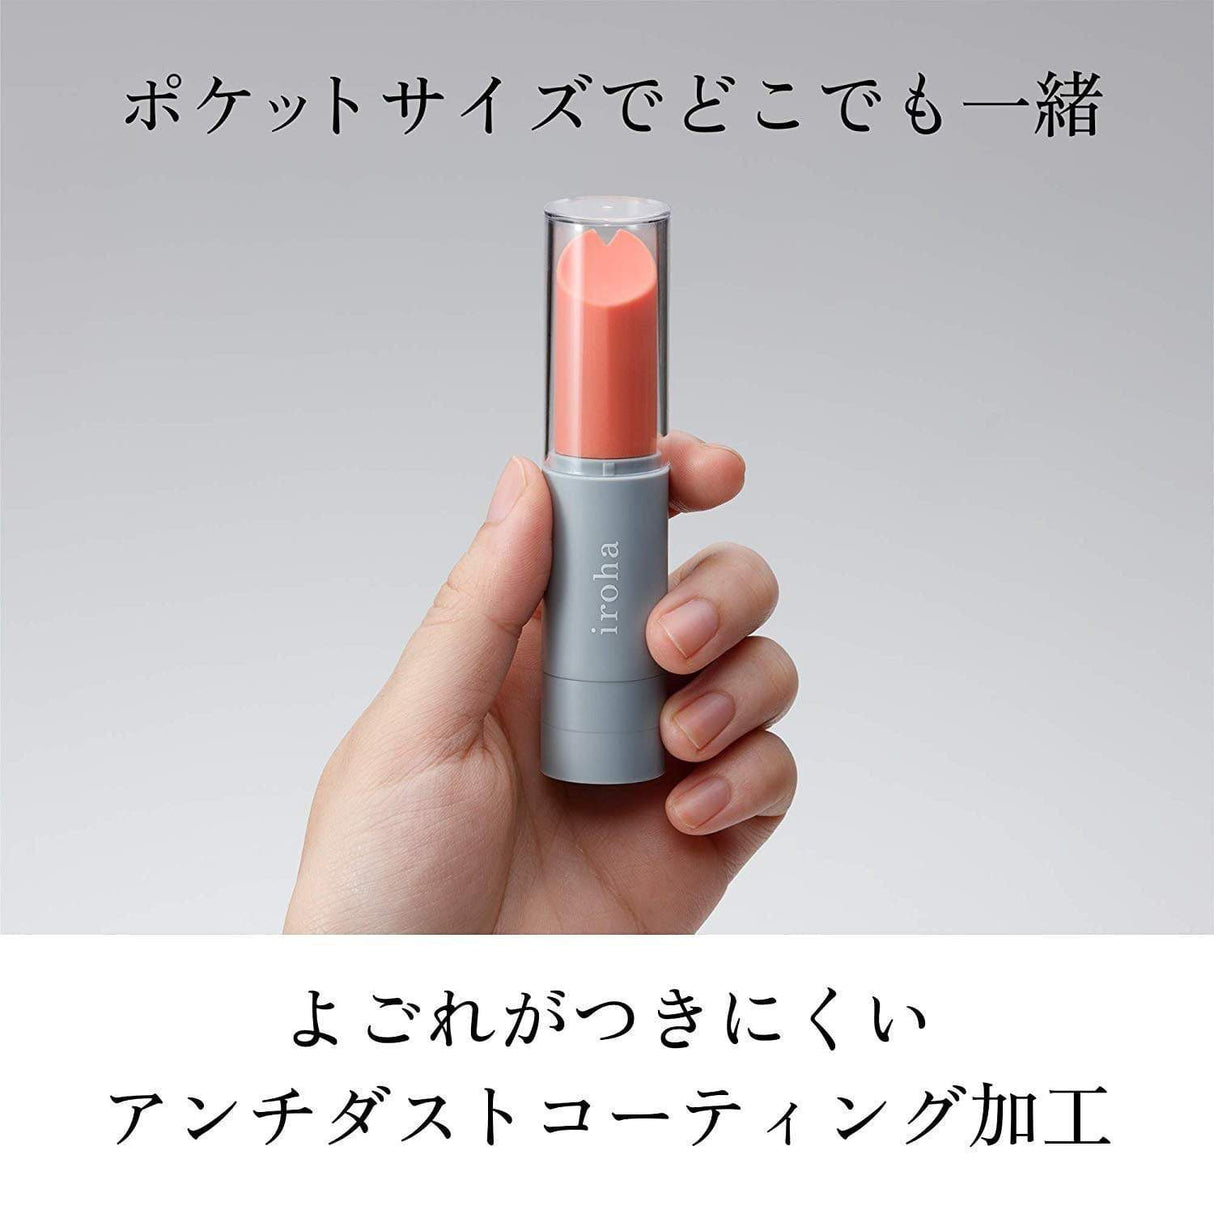 Tenga - Iroha Stick Discreet Vibrator CherryAffairs